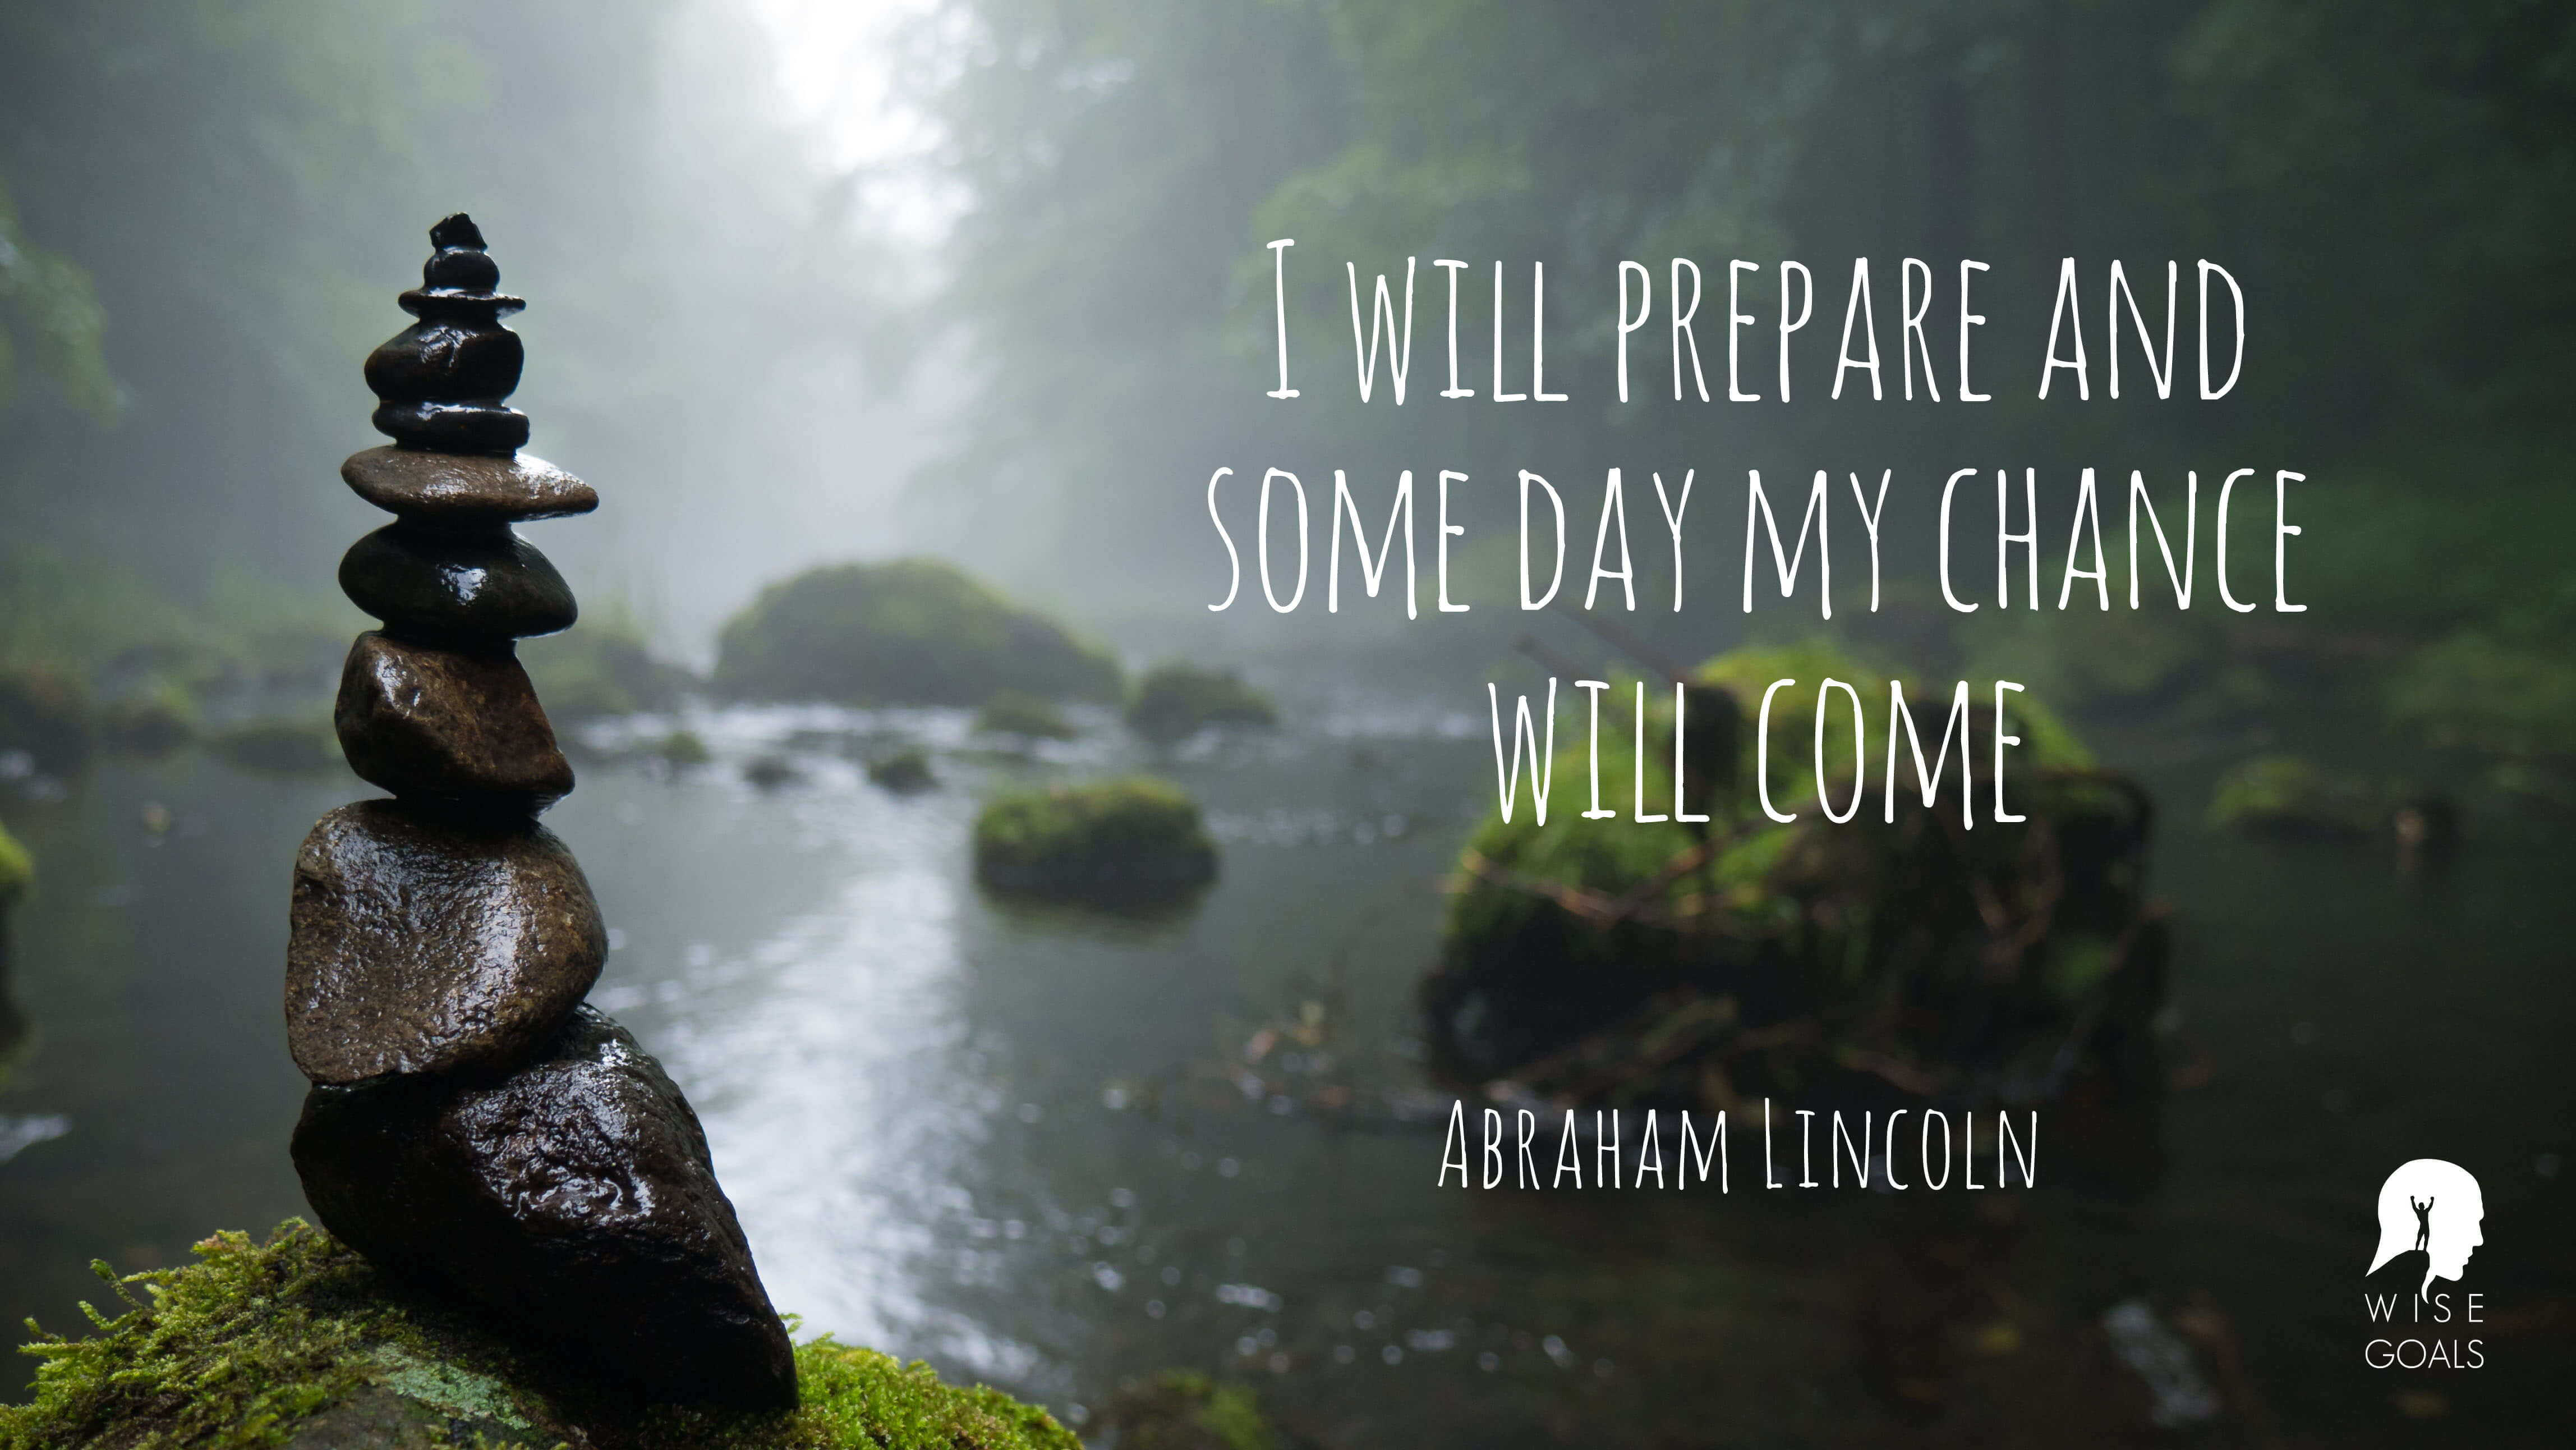 Lincoln - I will prepare and quote